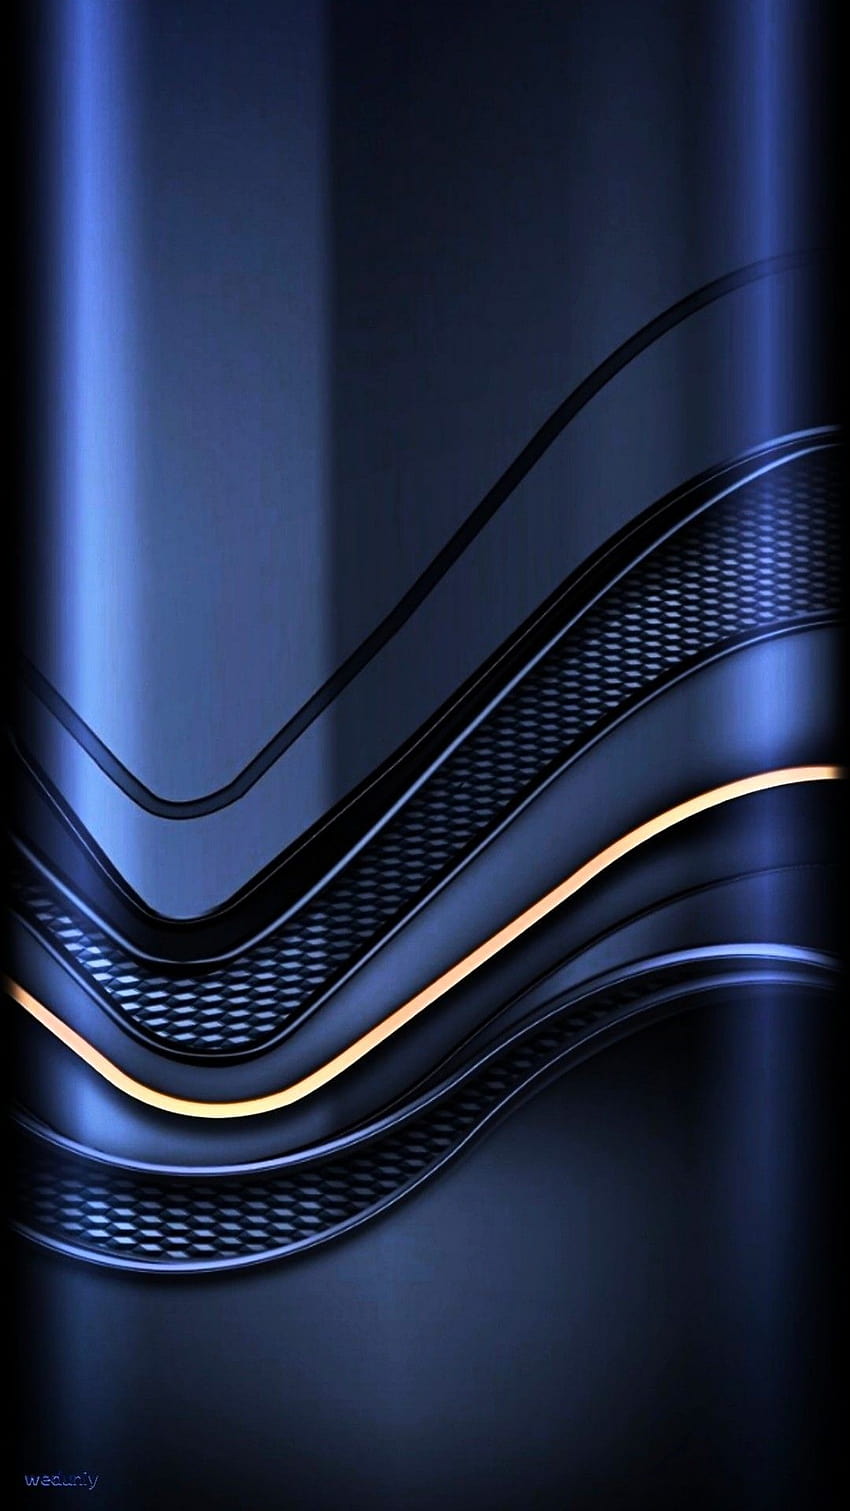 Hình nền Samsung A52: Cùng thưởng thức hàng loạt hình nền trang trí cho Samsung A52, từ những mẫu đơn giản đến những mẫu đầy sắc màu và phức tạp. Hãy tải ngay về để tạo điểm nhấn cho thiết kế màn hình của bạn.